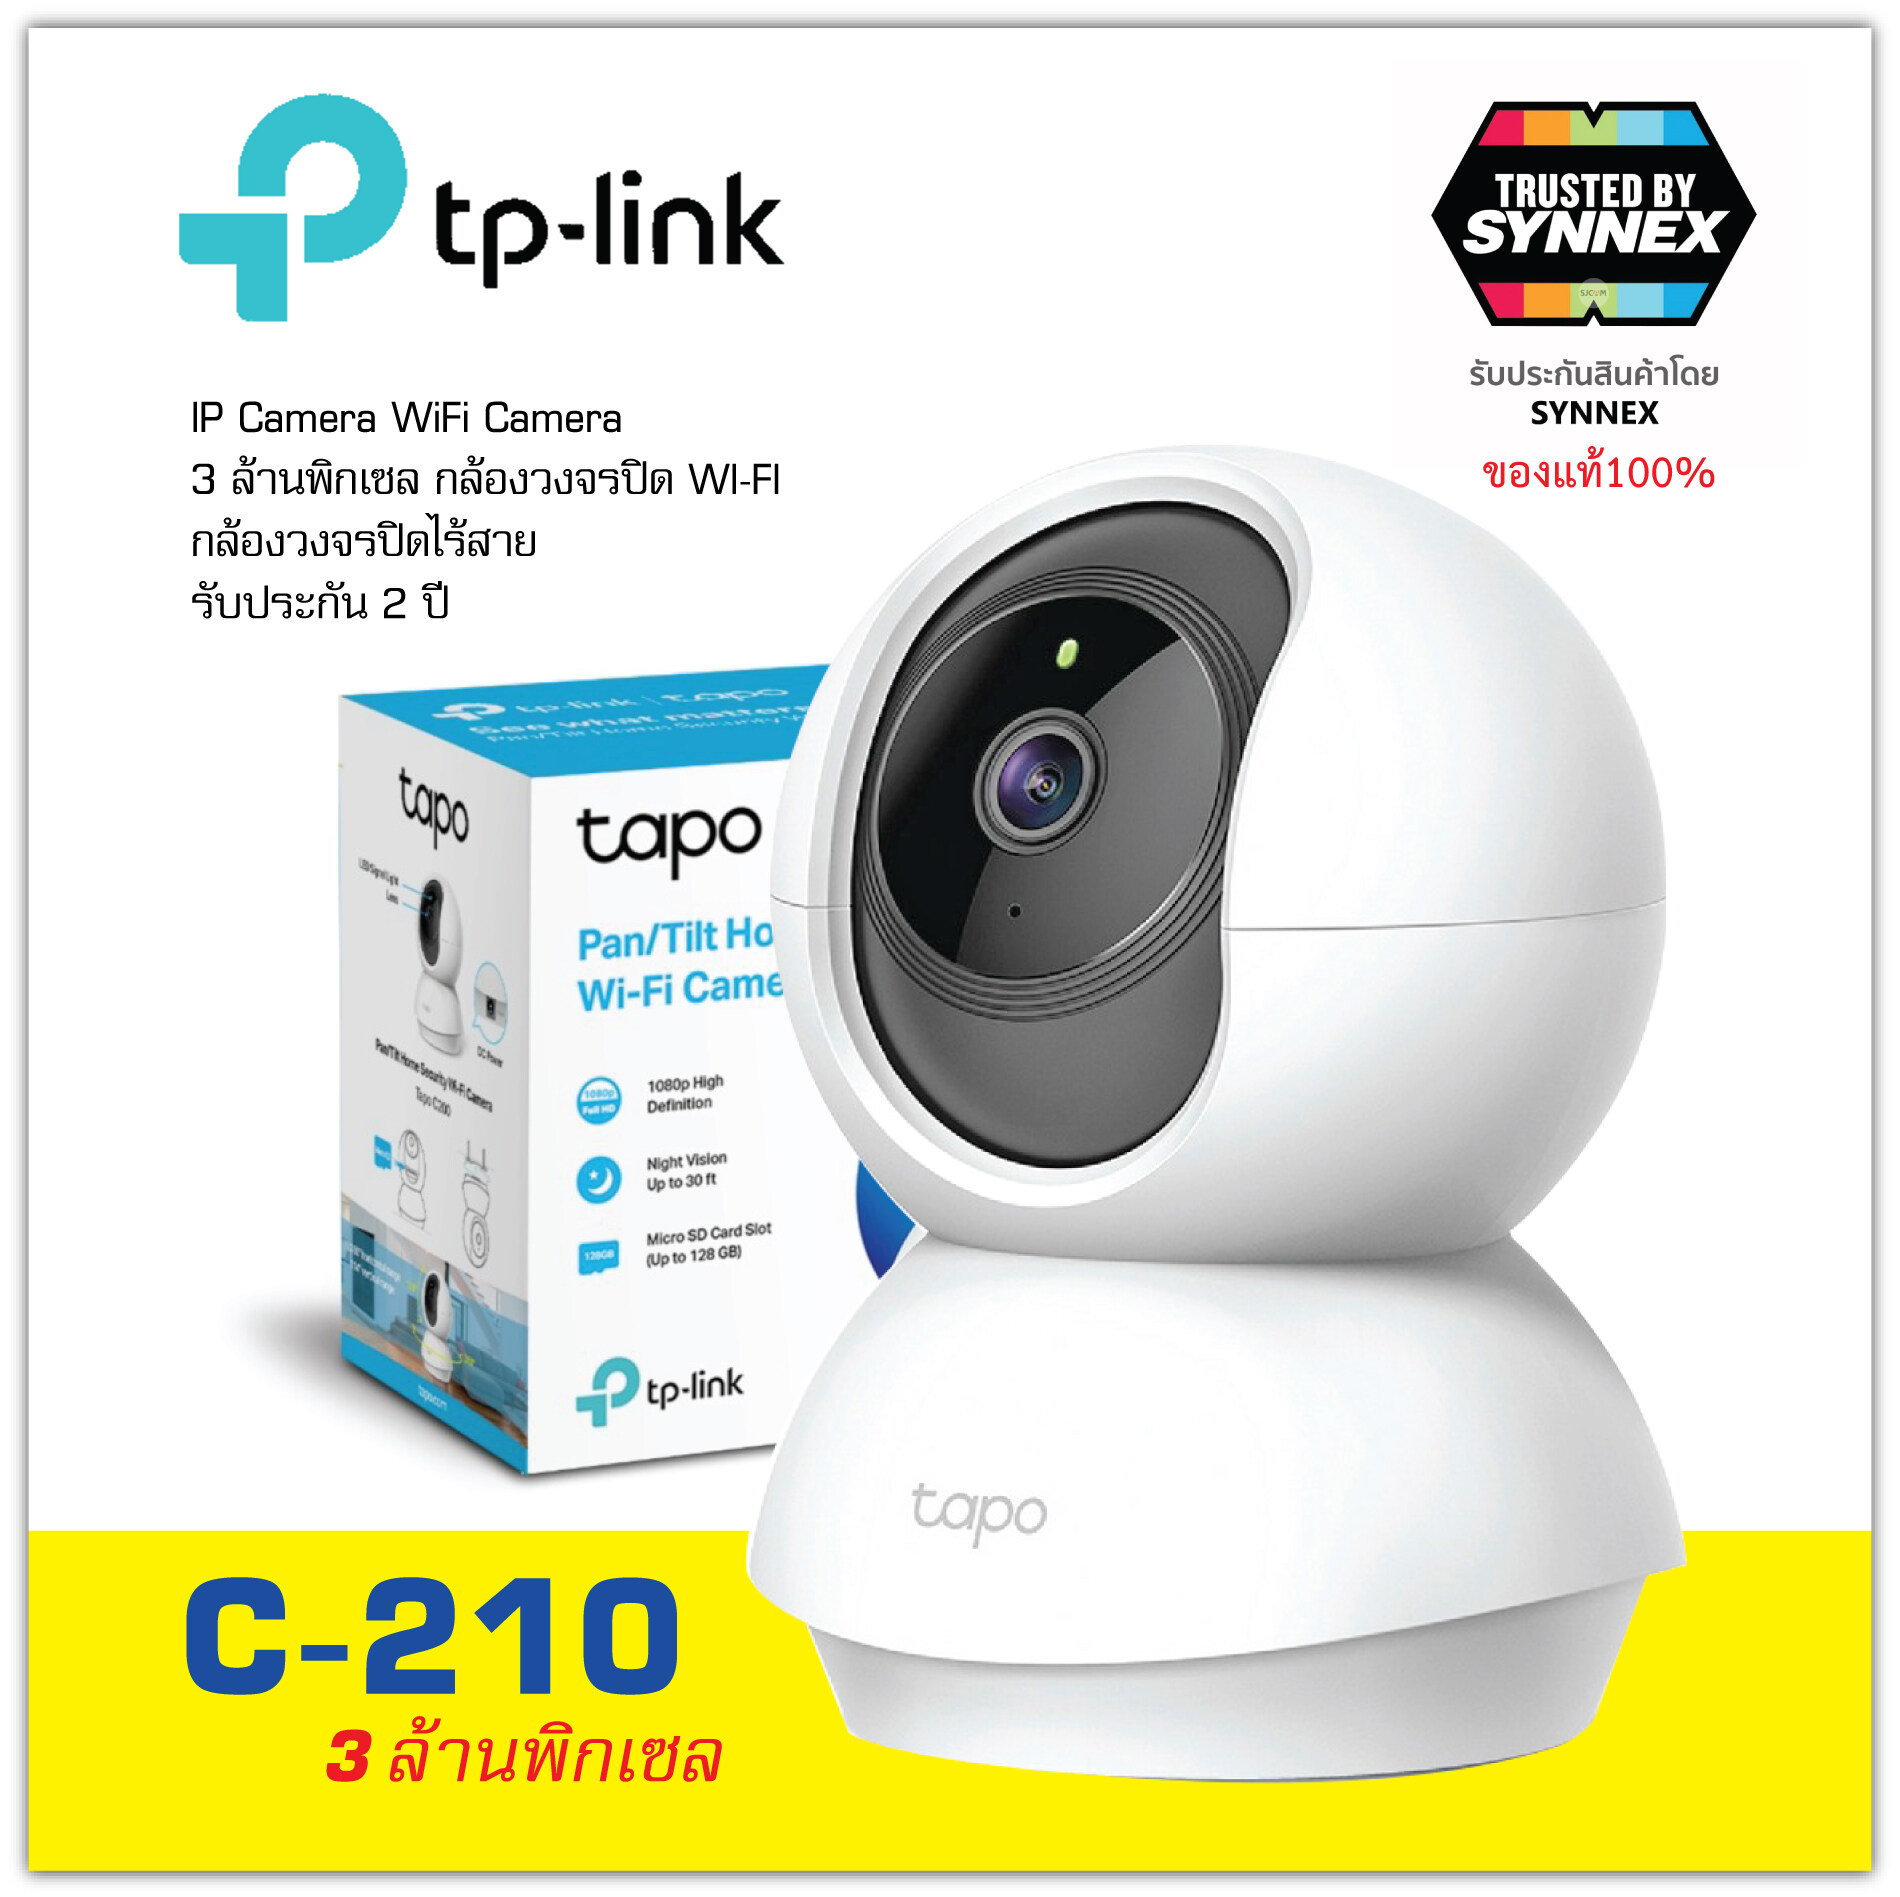 เกี่ยวกับสินค้า IP Camera : TP-LINK Tapo C-210 กล้องวงจรปิด คมชัด3ล้านพิกเซล หมุนได้360องศา ใช้งานง่าย ดูและพูดผ่านมือถือได้ ของแท้ประกันซินเน็ค